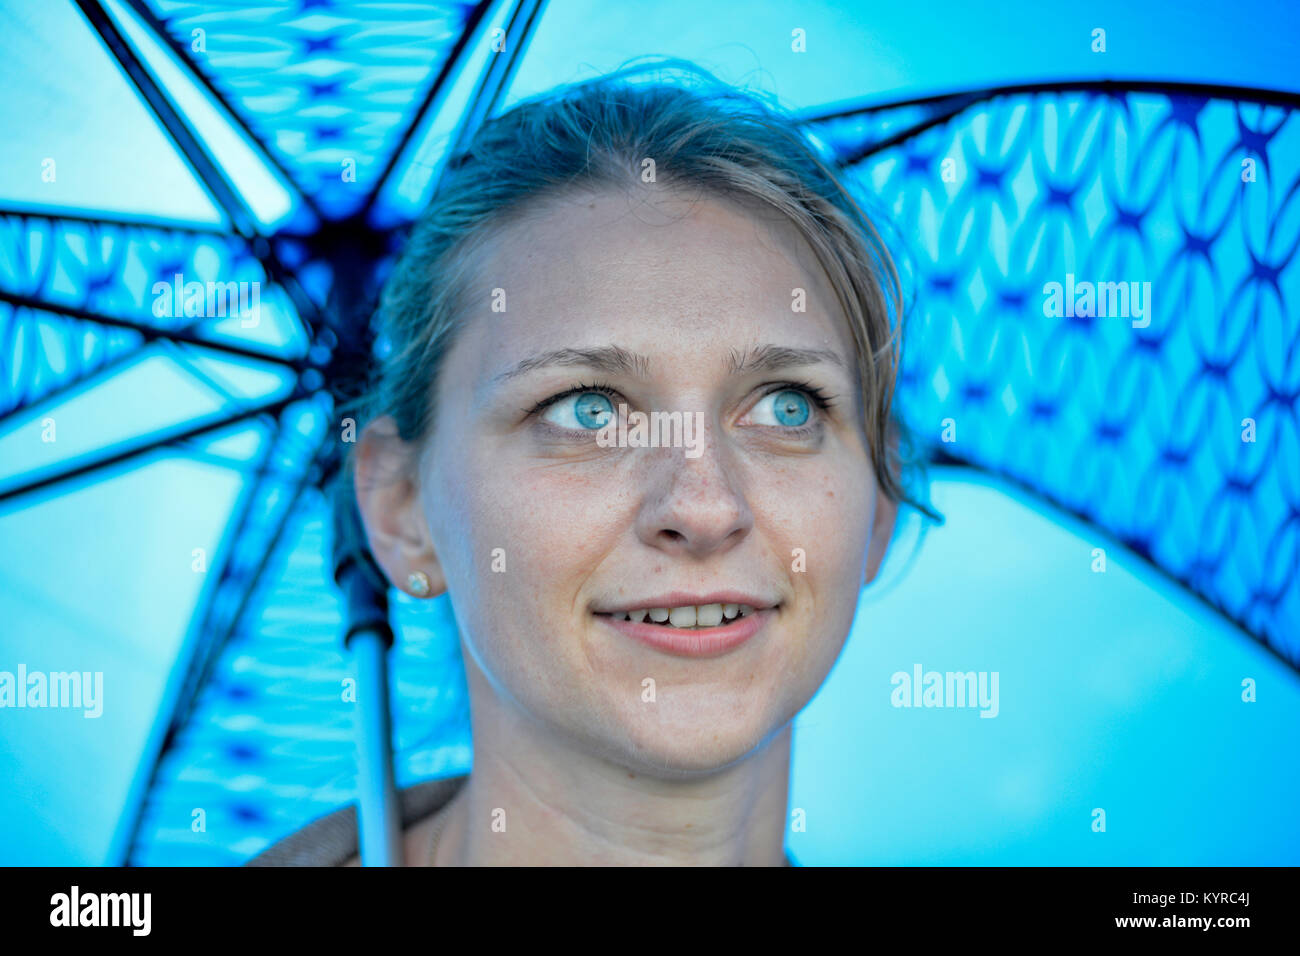 Ein blondes Mädchen mit blauen Augen lächeln unter einem blauen Dach Stockfoto